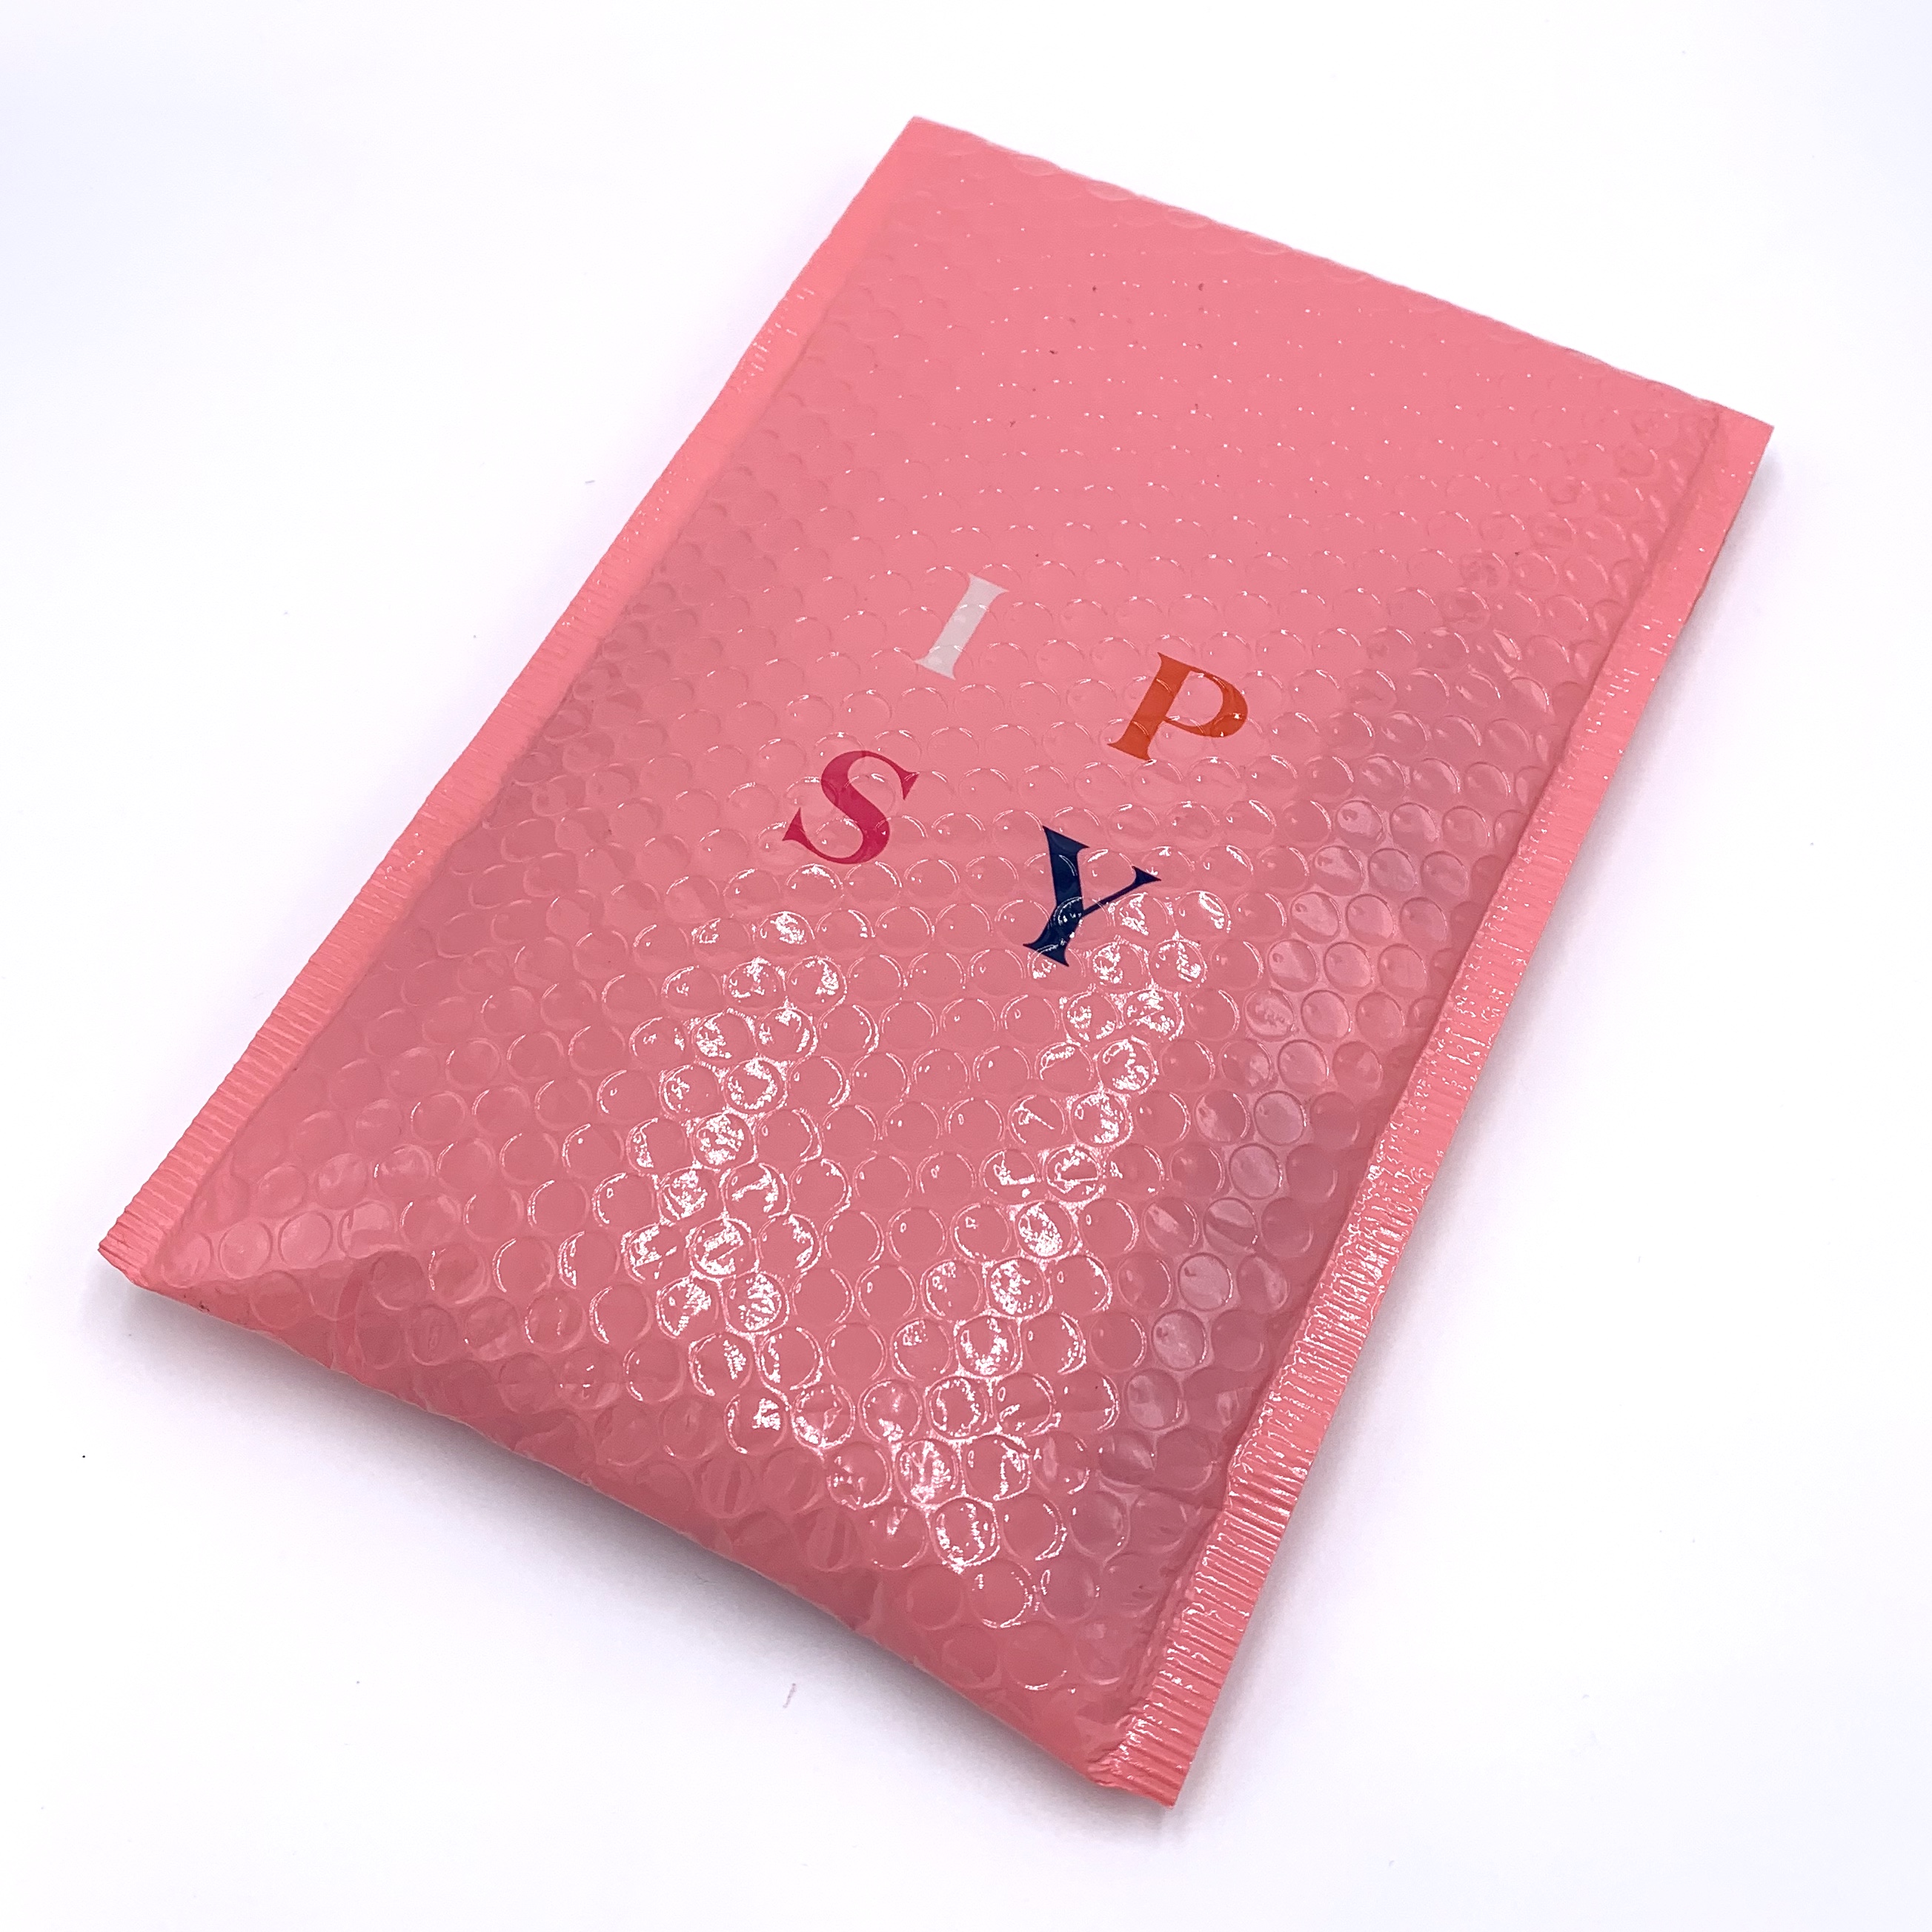 Envelope for Ipsy Glam Bag September 2020